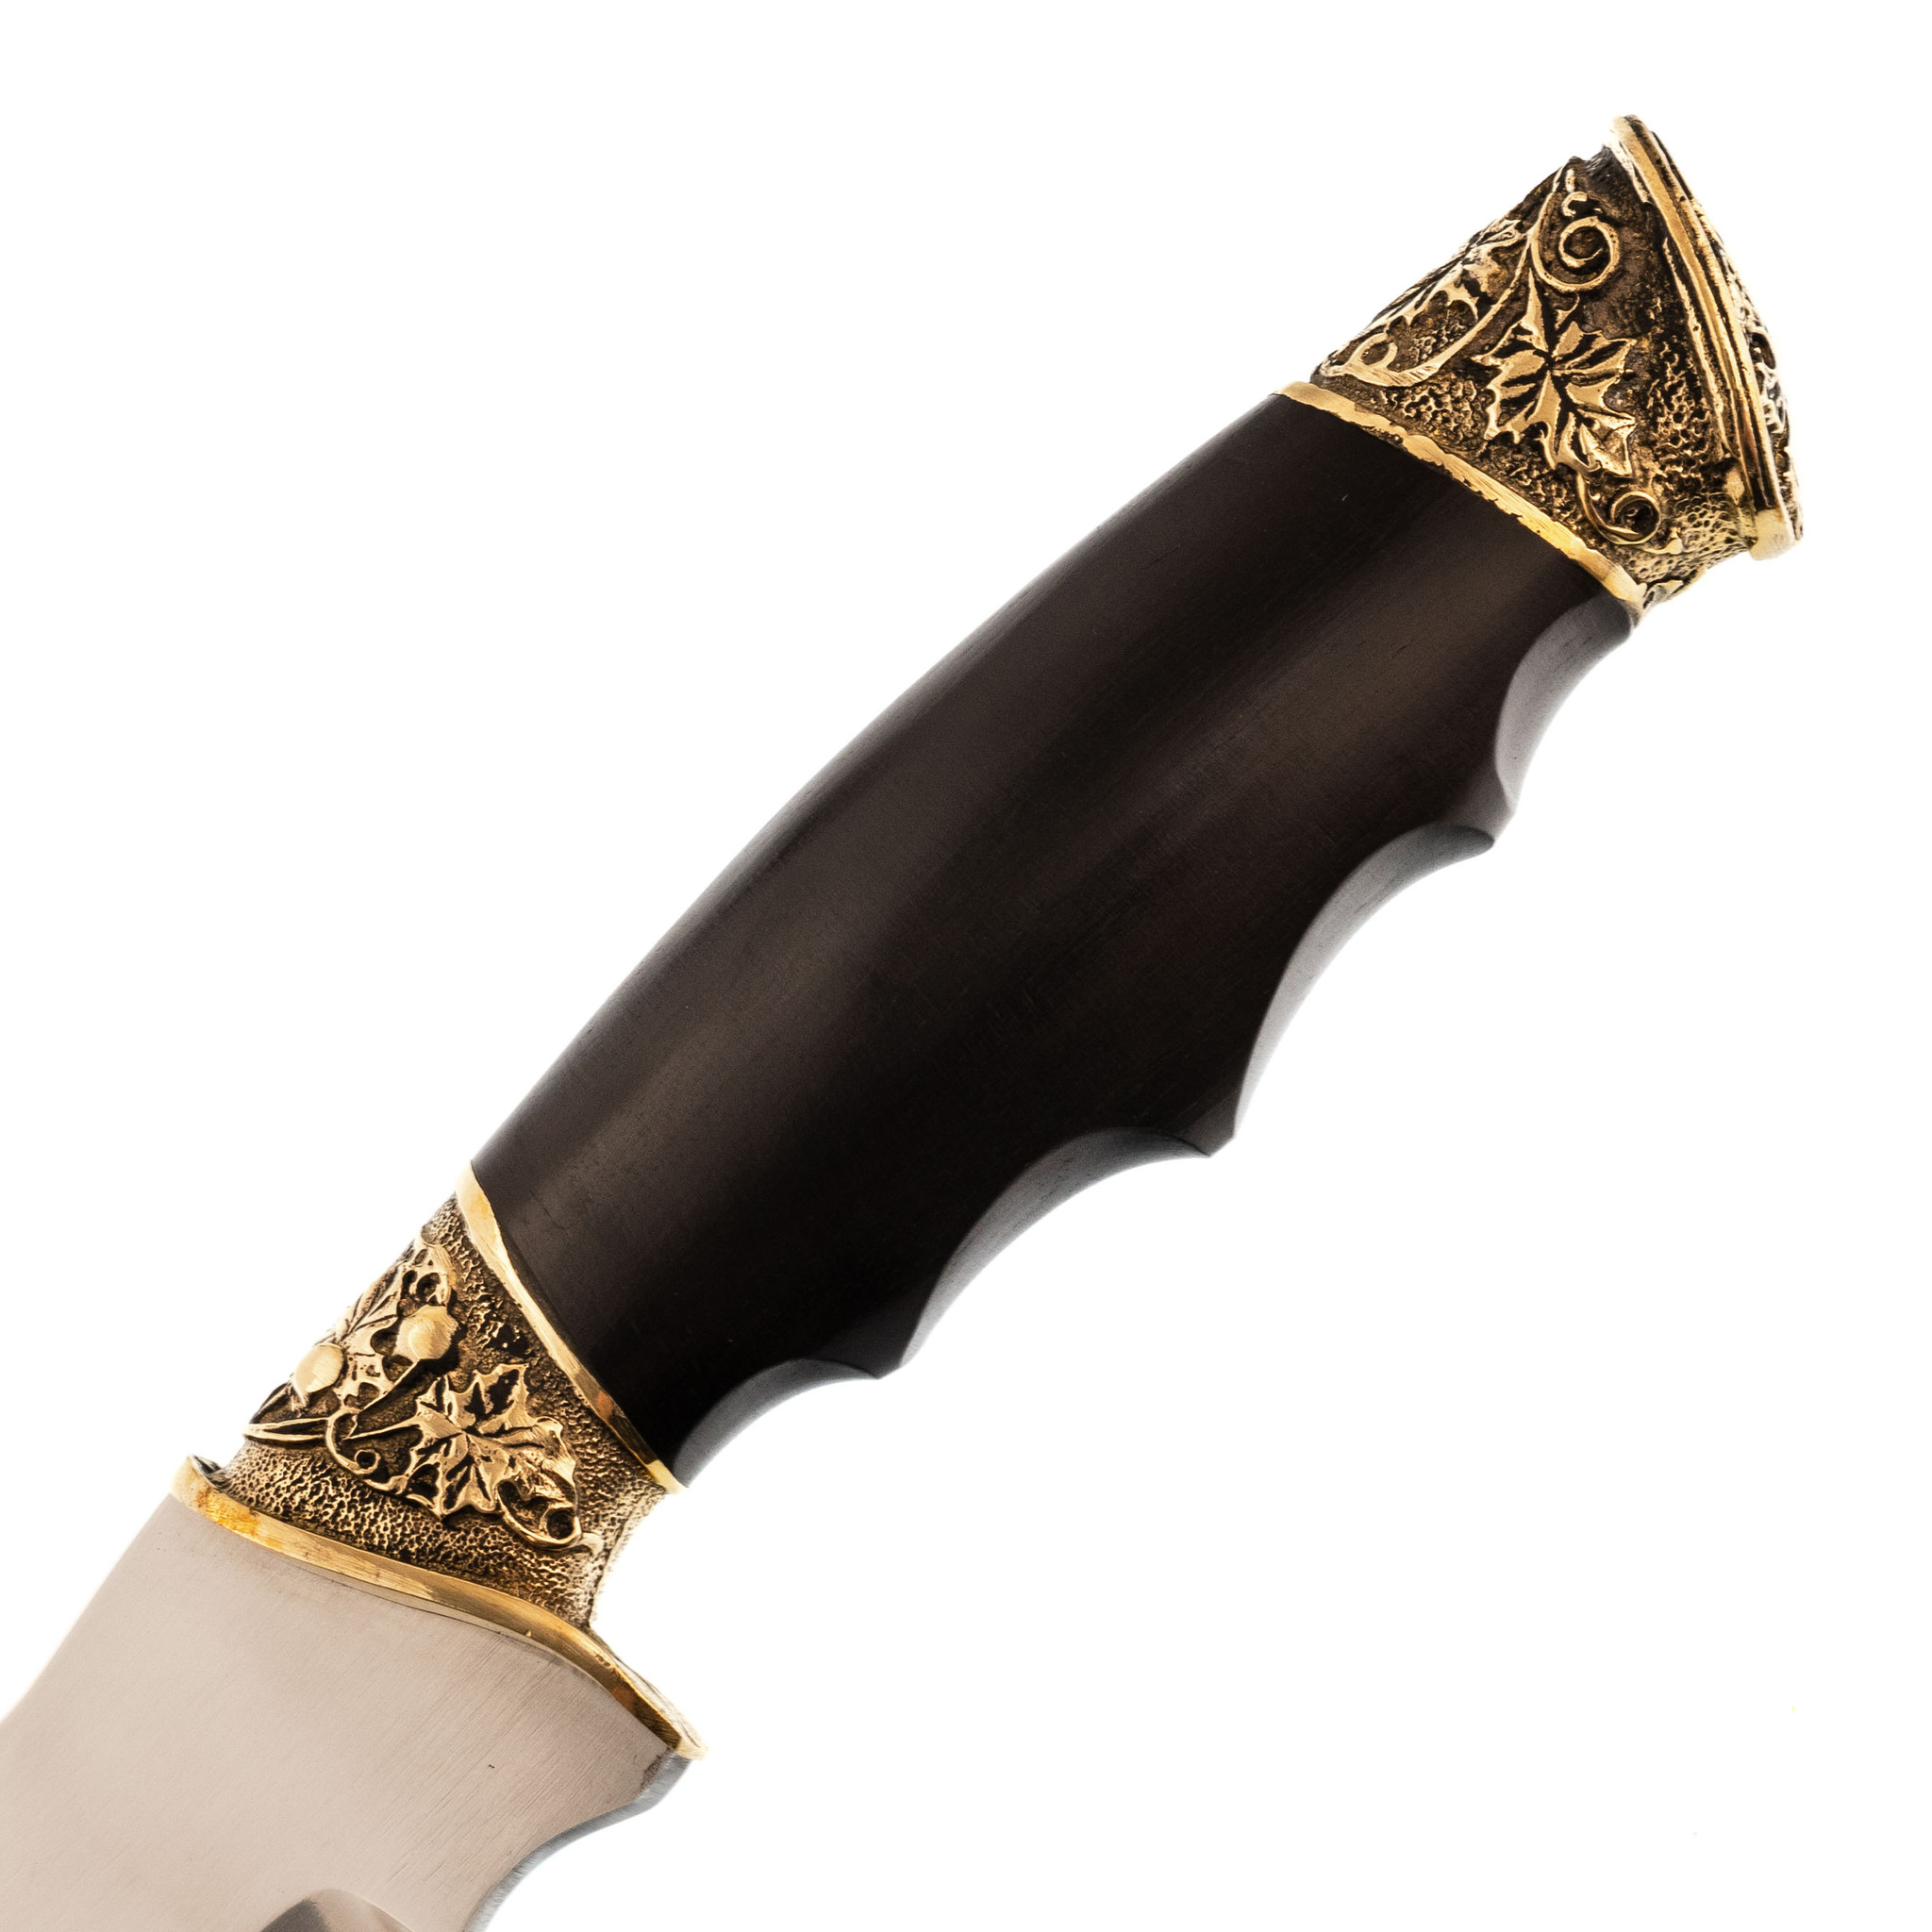  Осетр с кожаной рукоятью Х12МФ, Кизляр -  кизлярский нож 